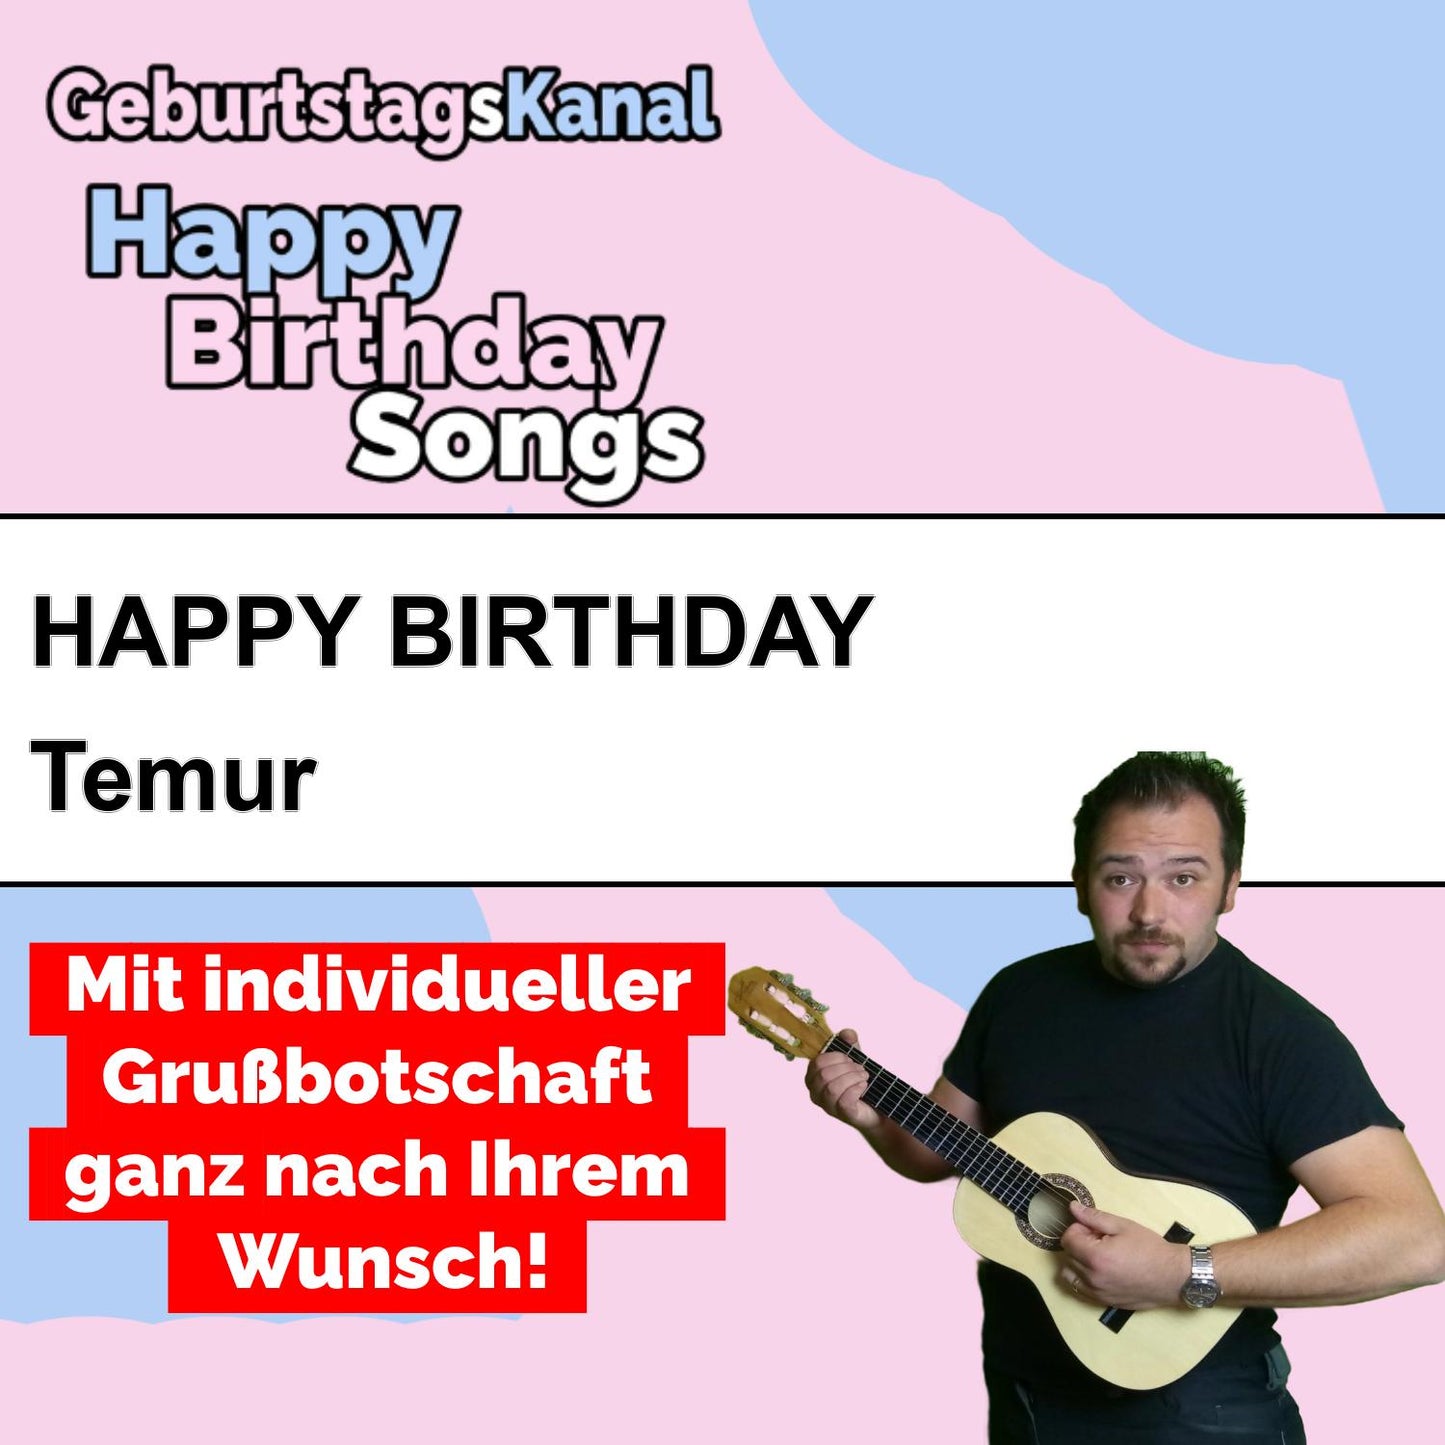 Produktbild Happy Birthday to you Temur mit Wunschgrußbotschaft